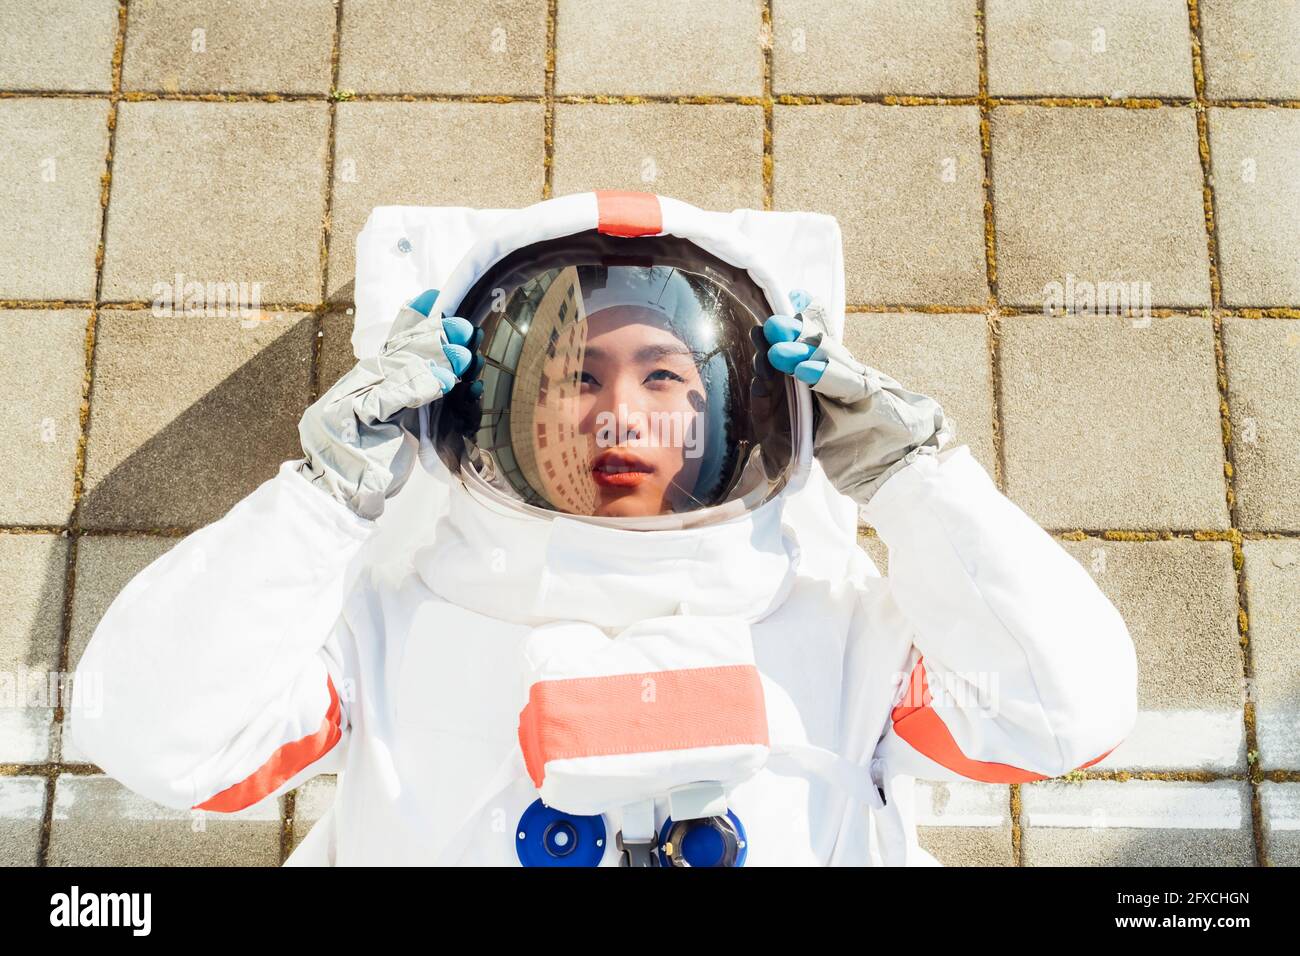 Weibliche Astronautin mit Helm, während sie an sonnigen Tagen auf dem Fußweg liegt Stockfoto